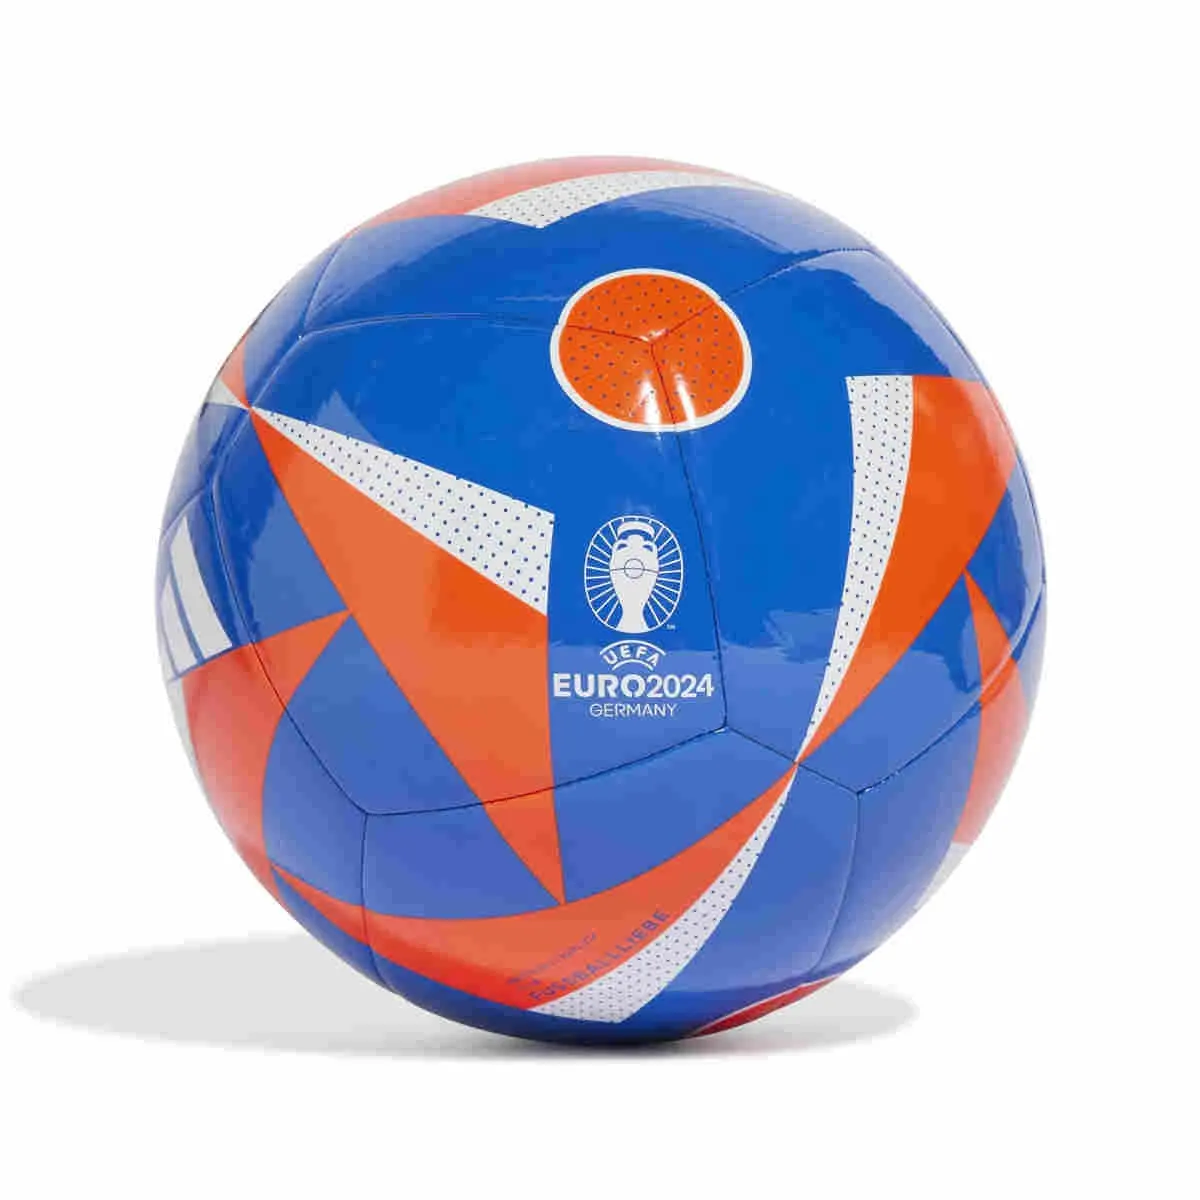 Balón de fútbol adidas Euro 2024, azul rojo blanco